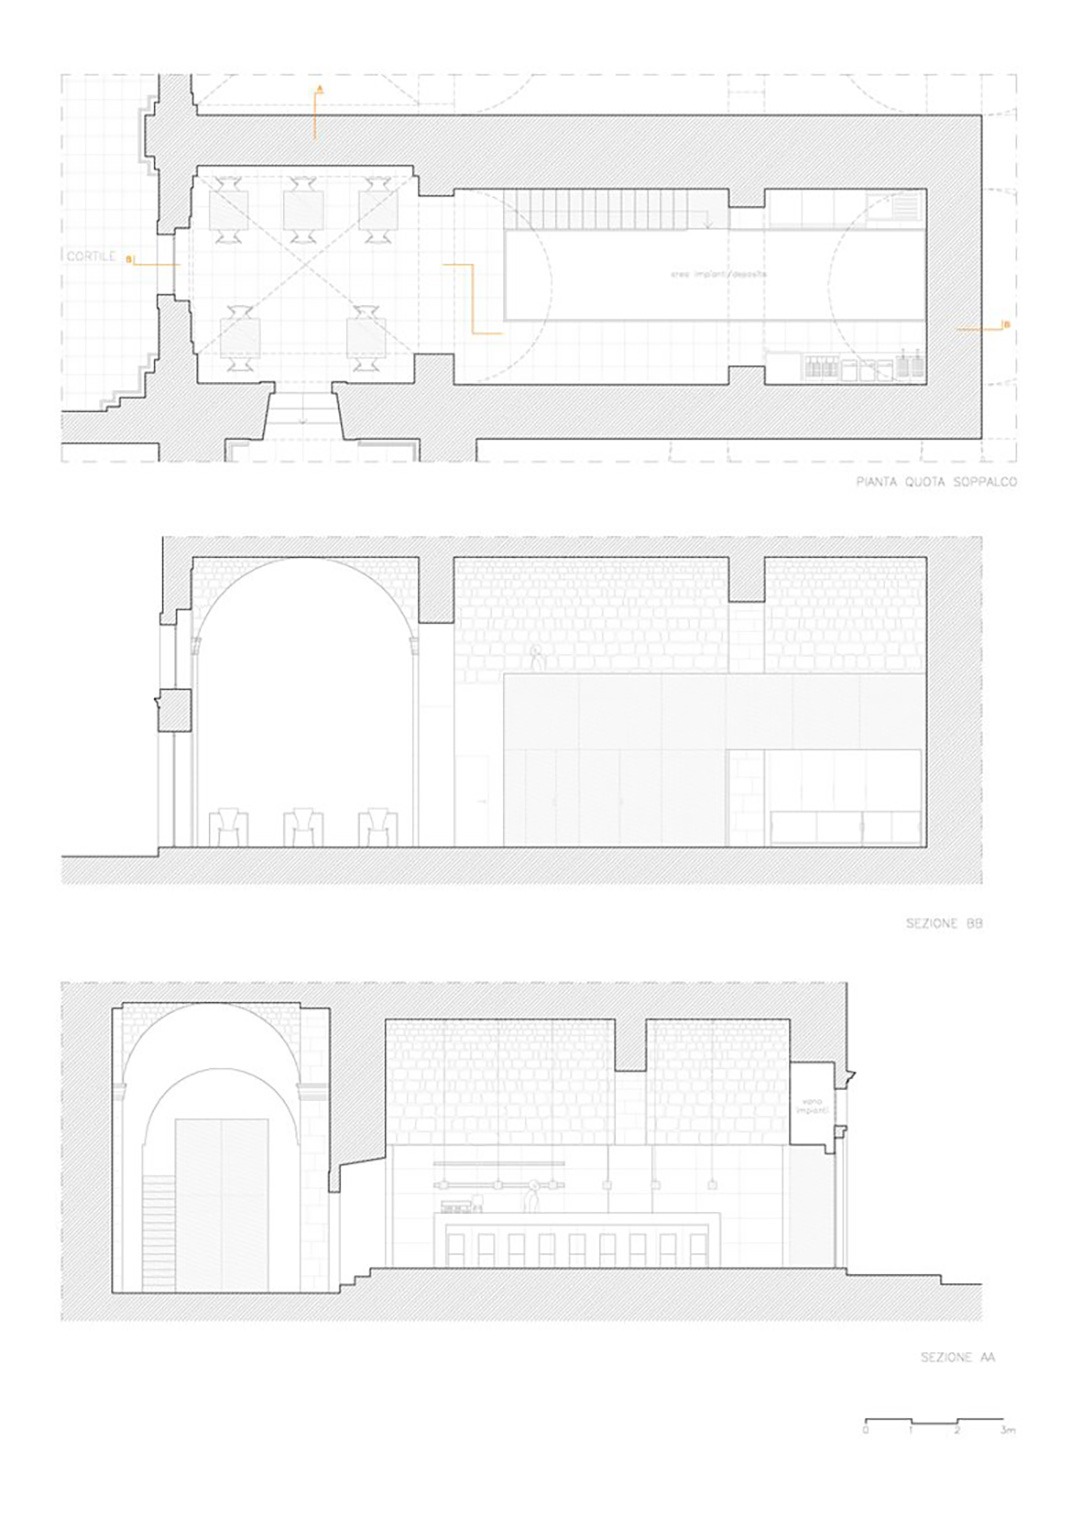 古建筑群中的餐厅改造空间设计 Francesco Caristia 餐厅LOGO VI空间设计 全球餐饮研究所 视觉餐饮 深圳 武汉 杭州 上海 广州 北京